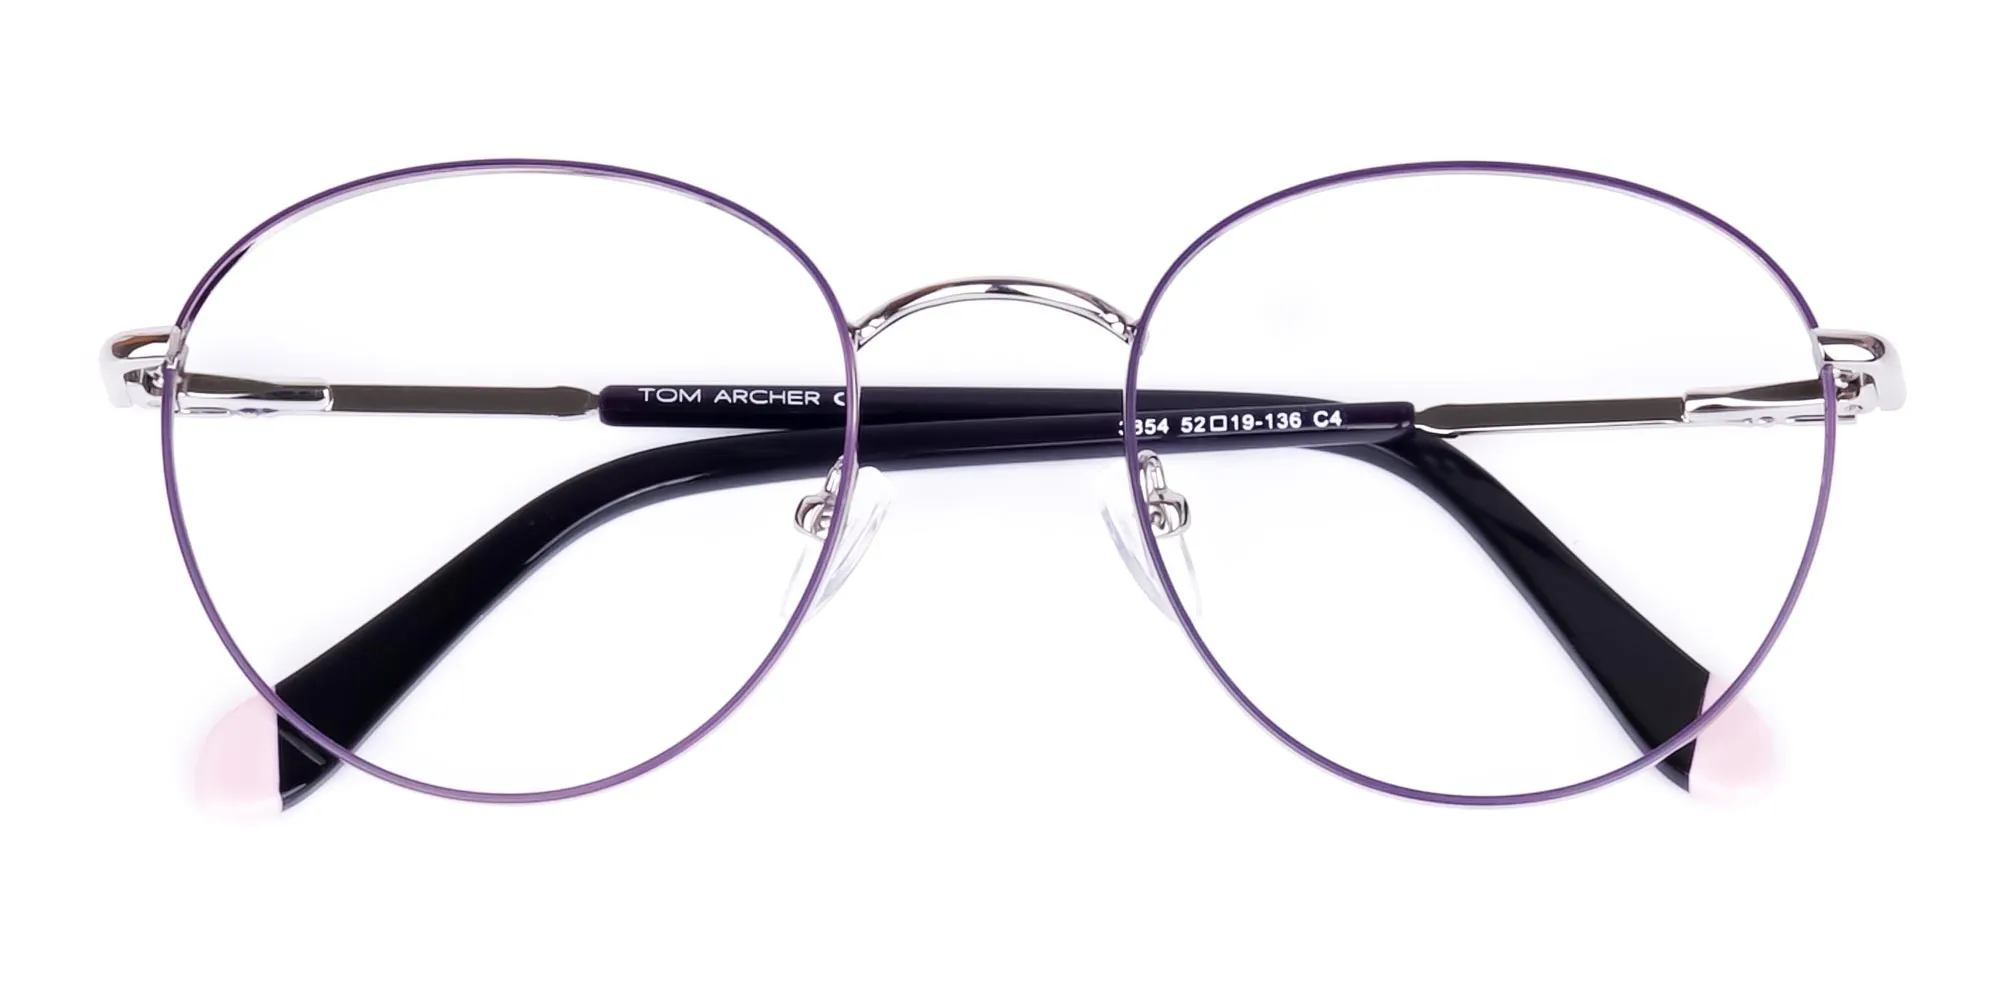 Dark Purple and Silver Round Glasses-2